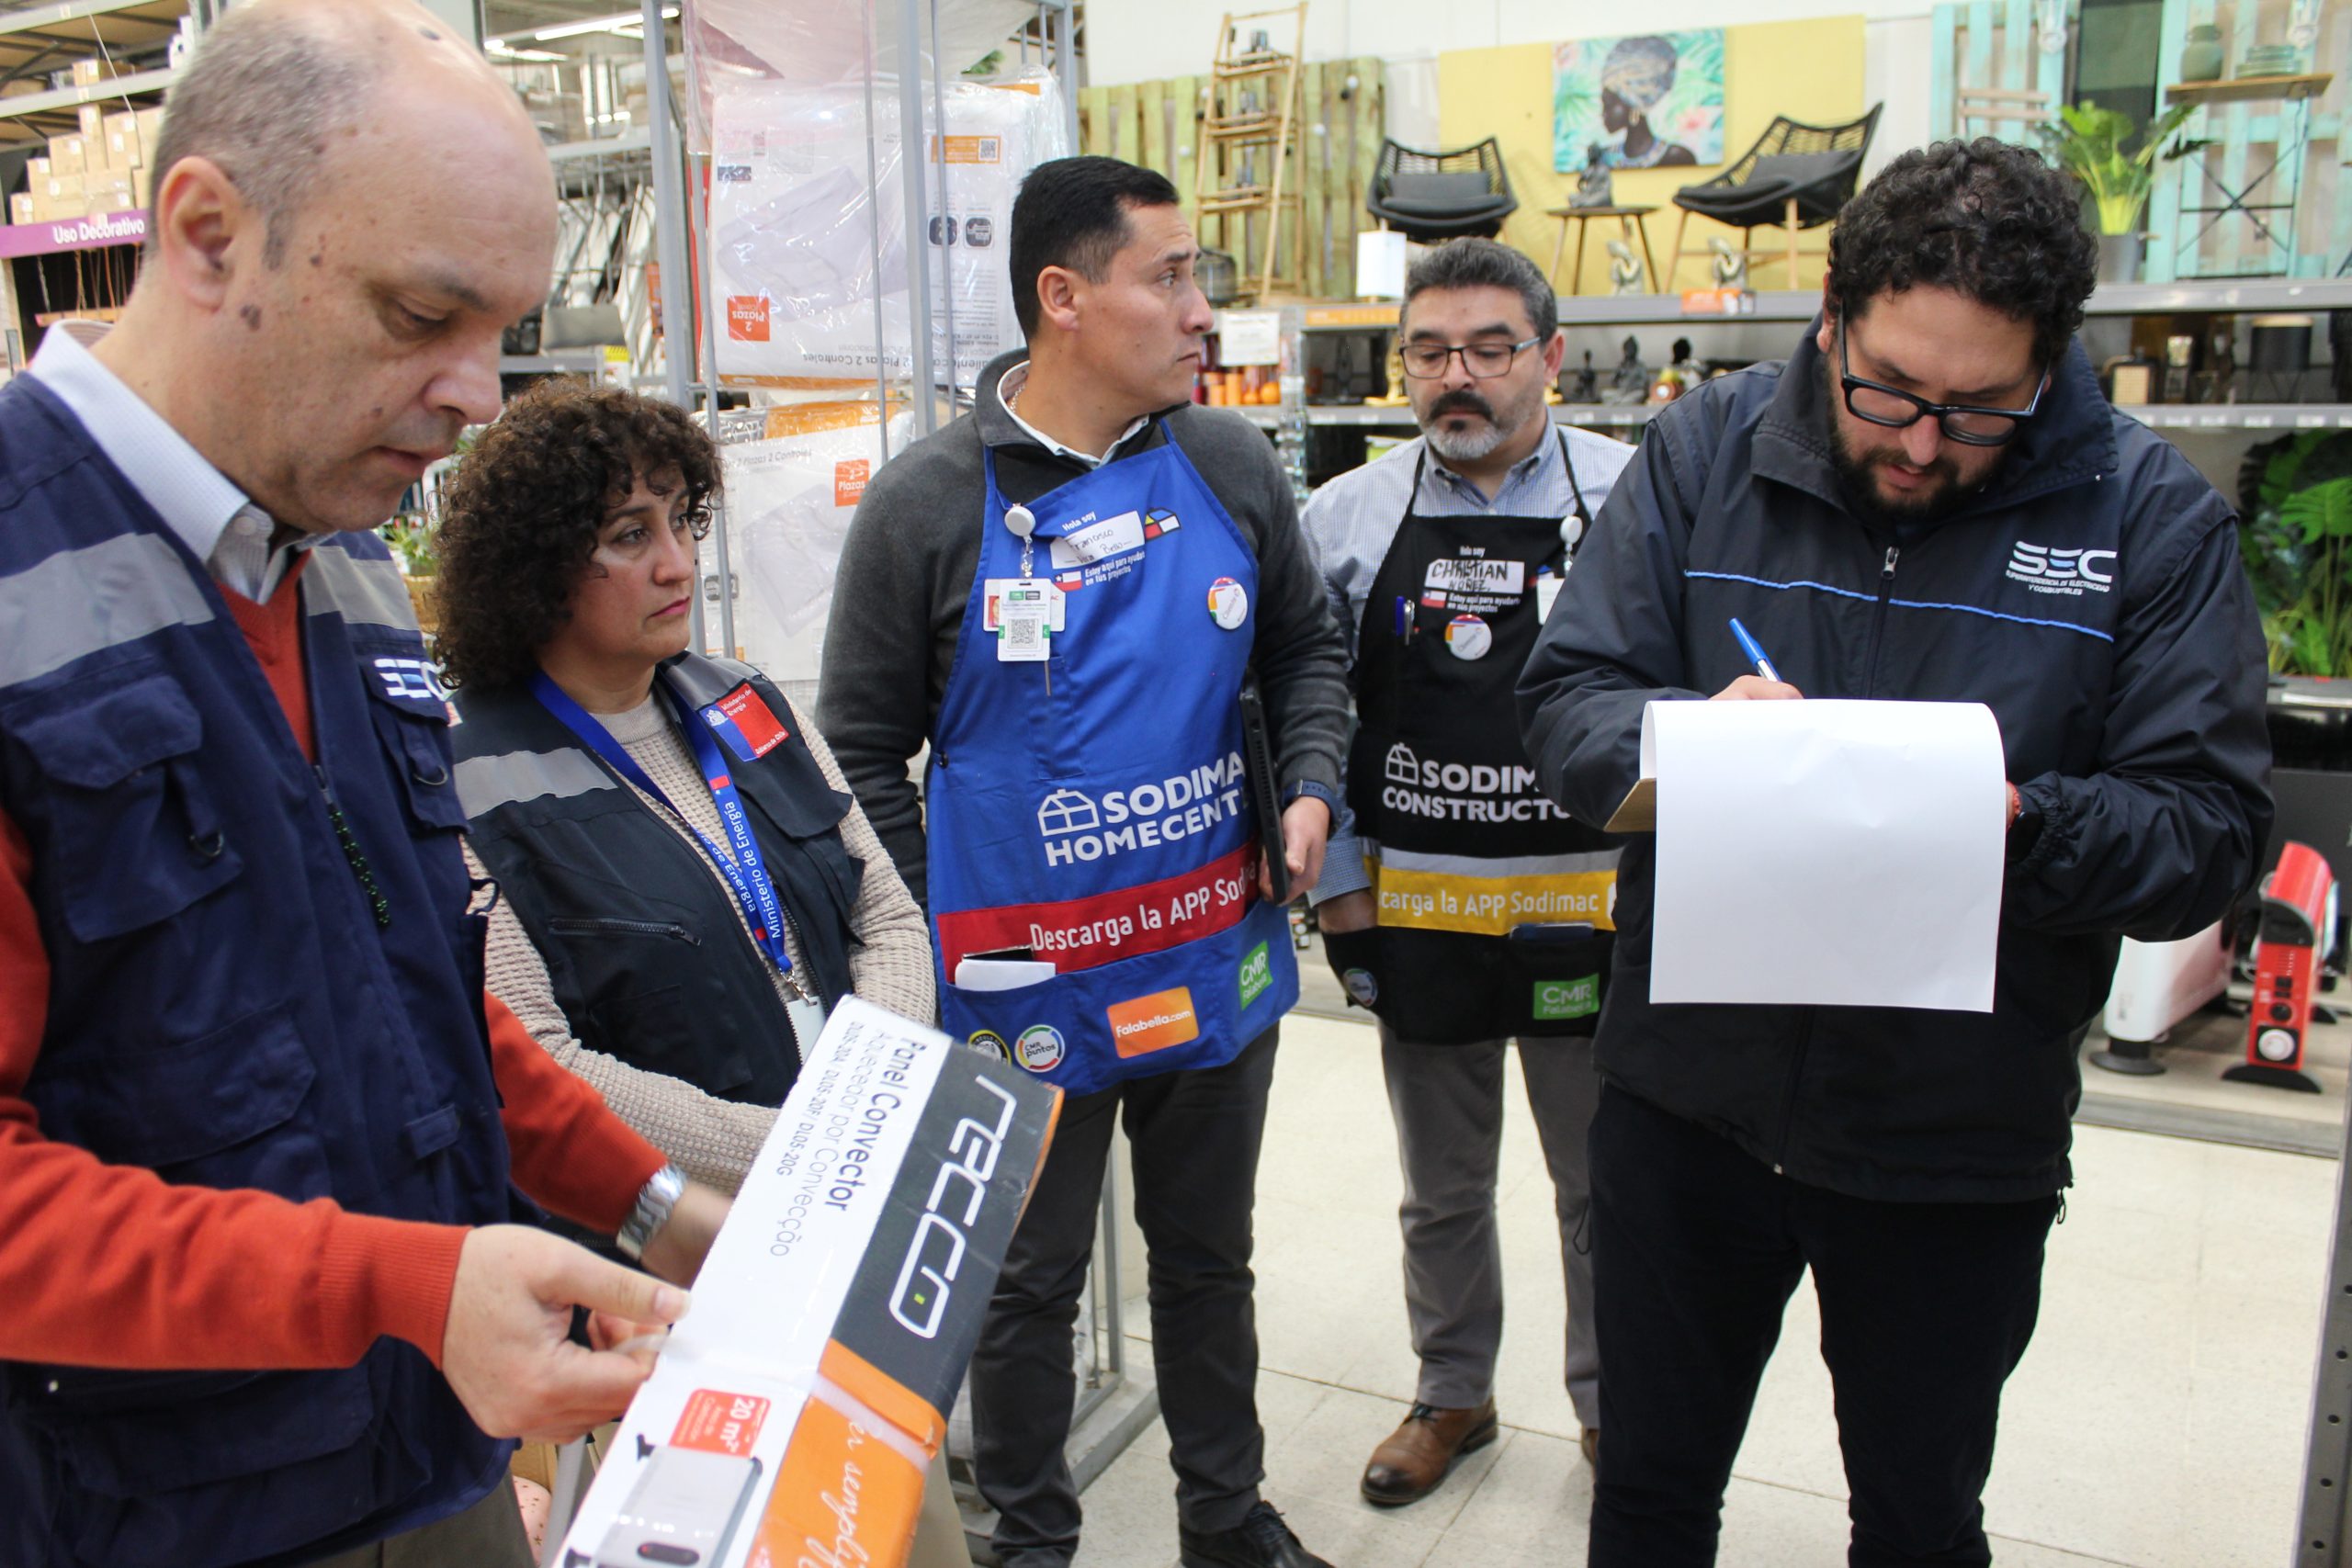 Coquimbo: SEC y Seremi recuerdan cuidados al comprar y usar estufas en hogares